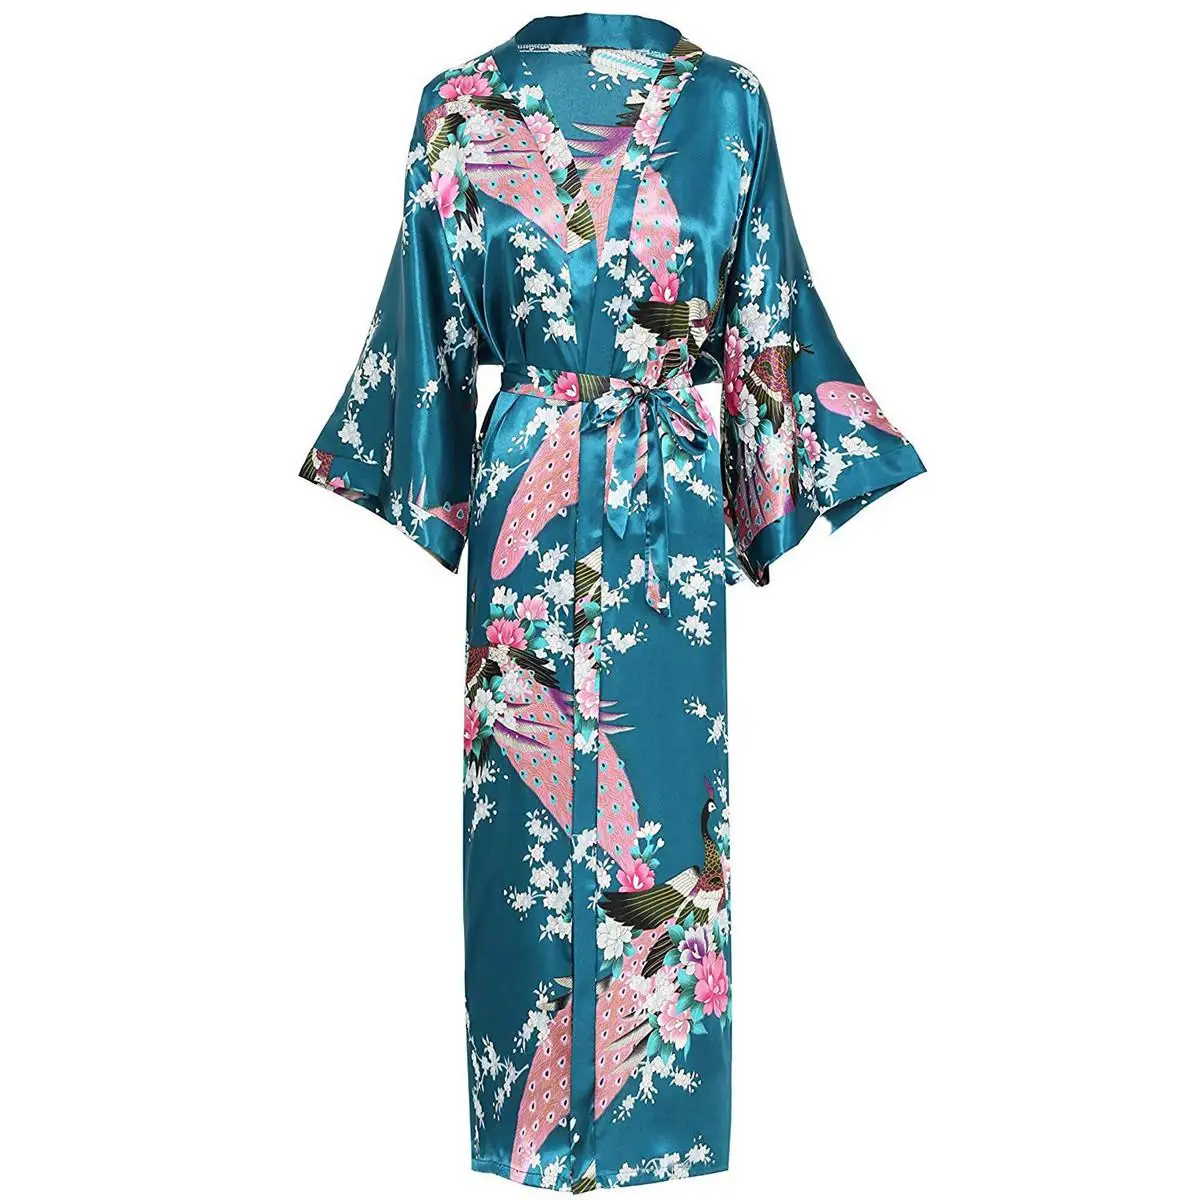 Весенний халат для женщин с поясом кимоно купальный халат атласный длинный халат для сна 3/4 рукав неглиже большой размер 3XL-6XL - Цвет: Light Green